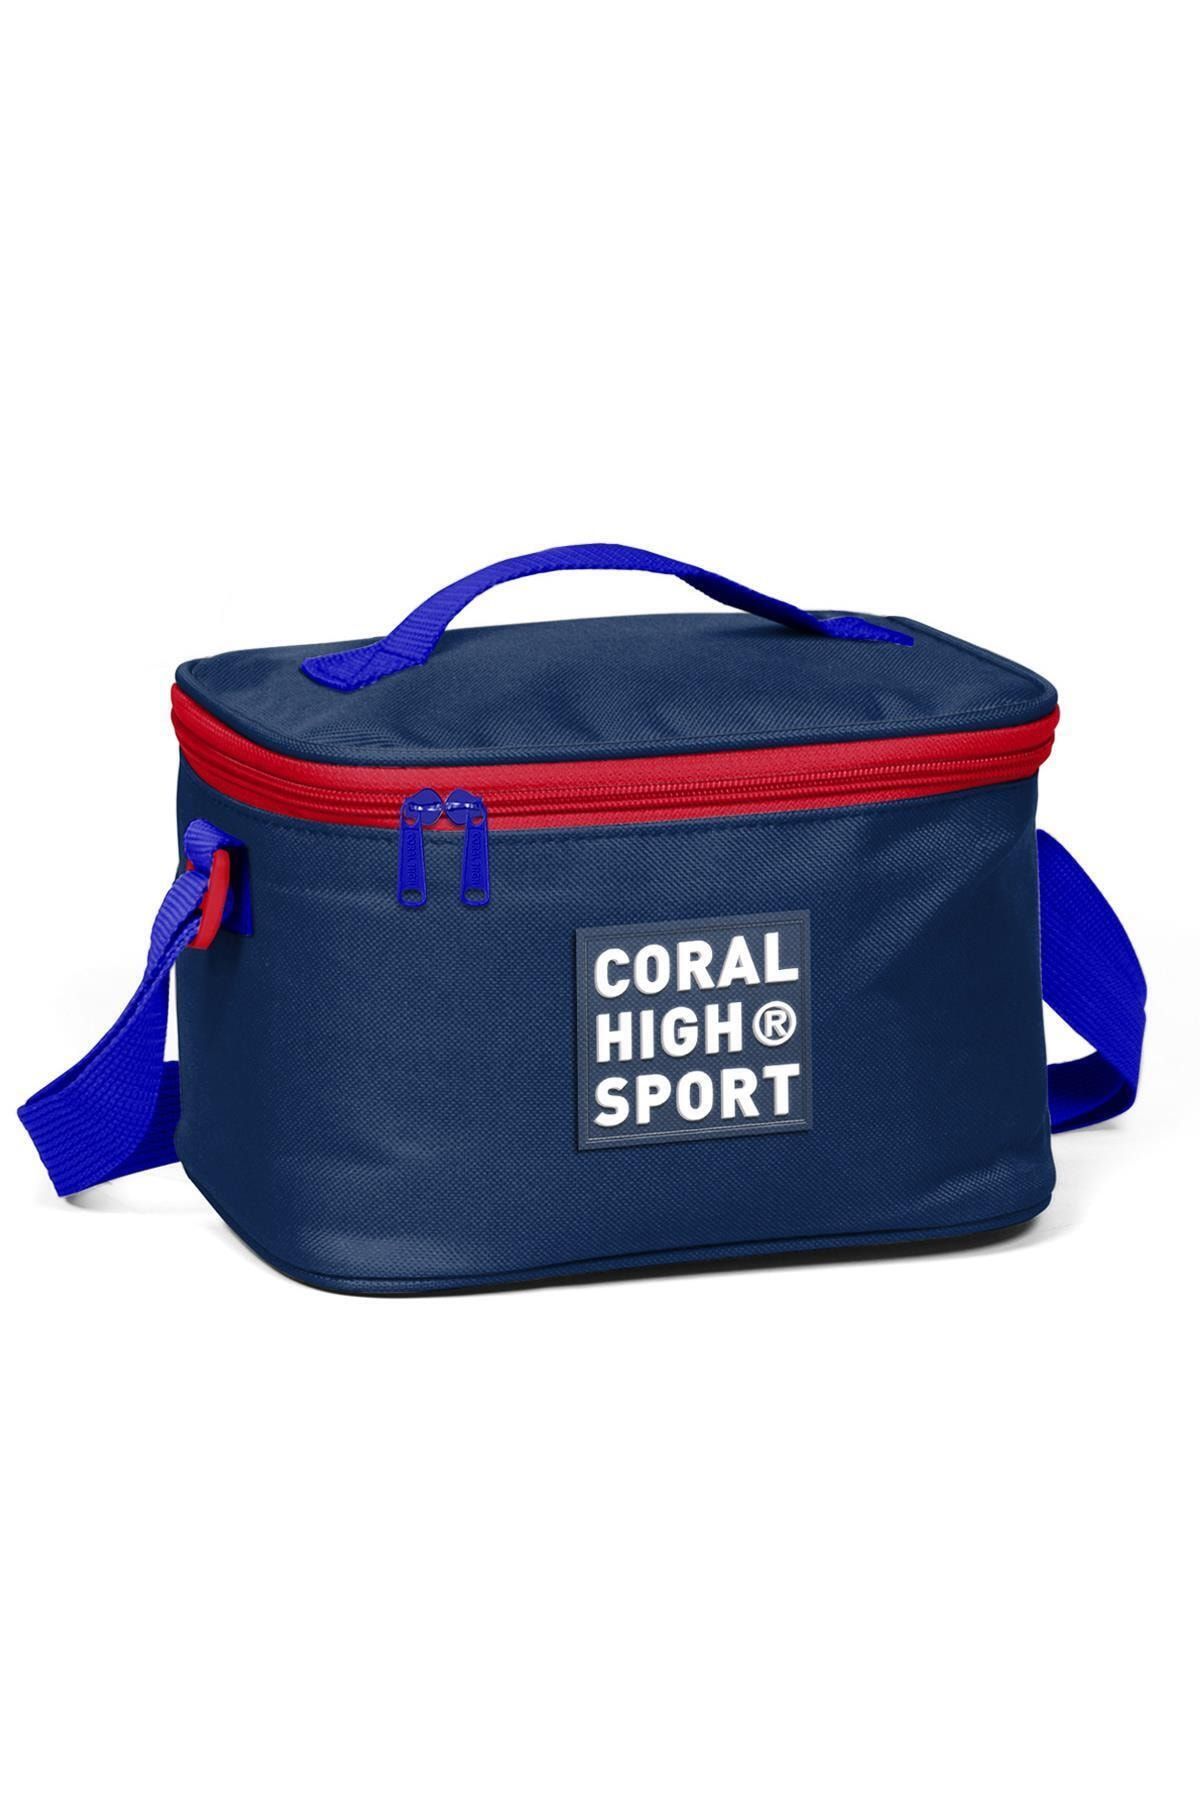 Coral High Beslenme Çantası Sport Lacivert Kırmızı Thermo